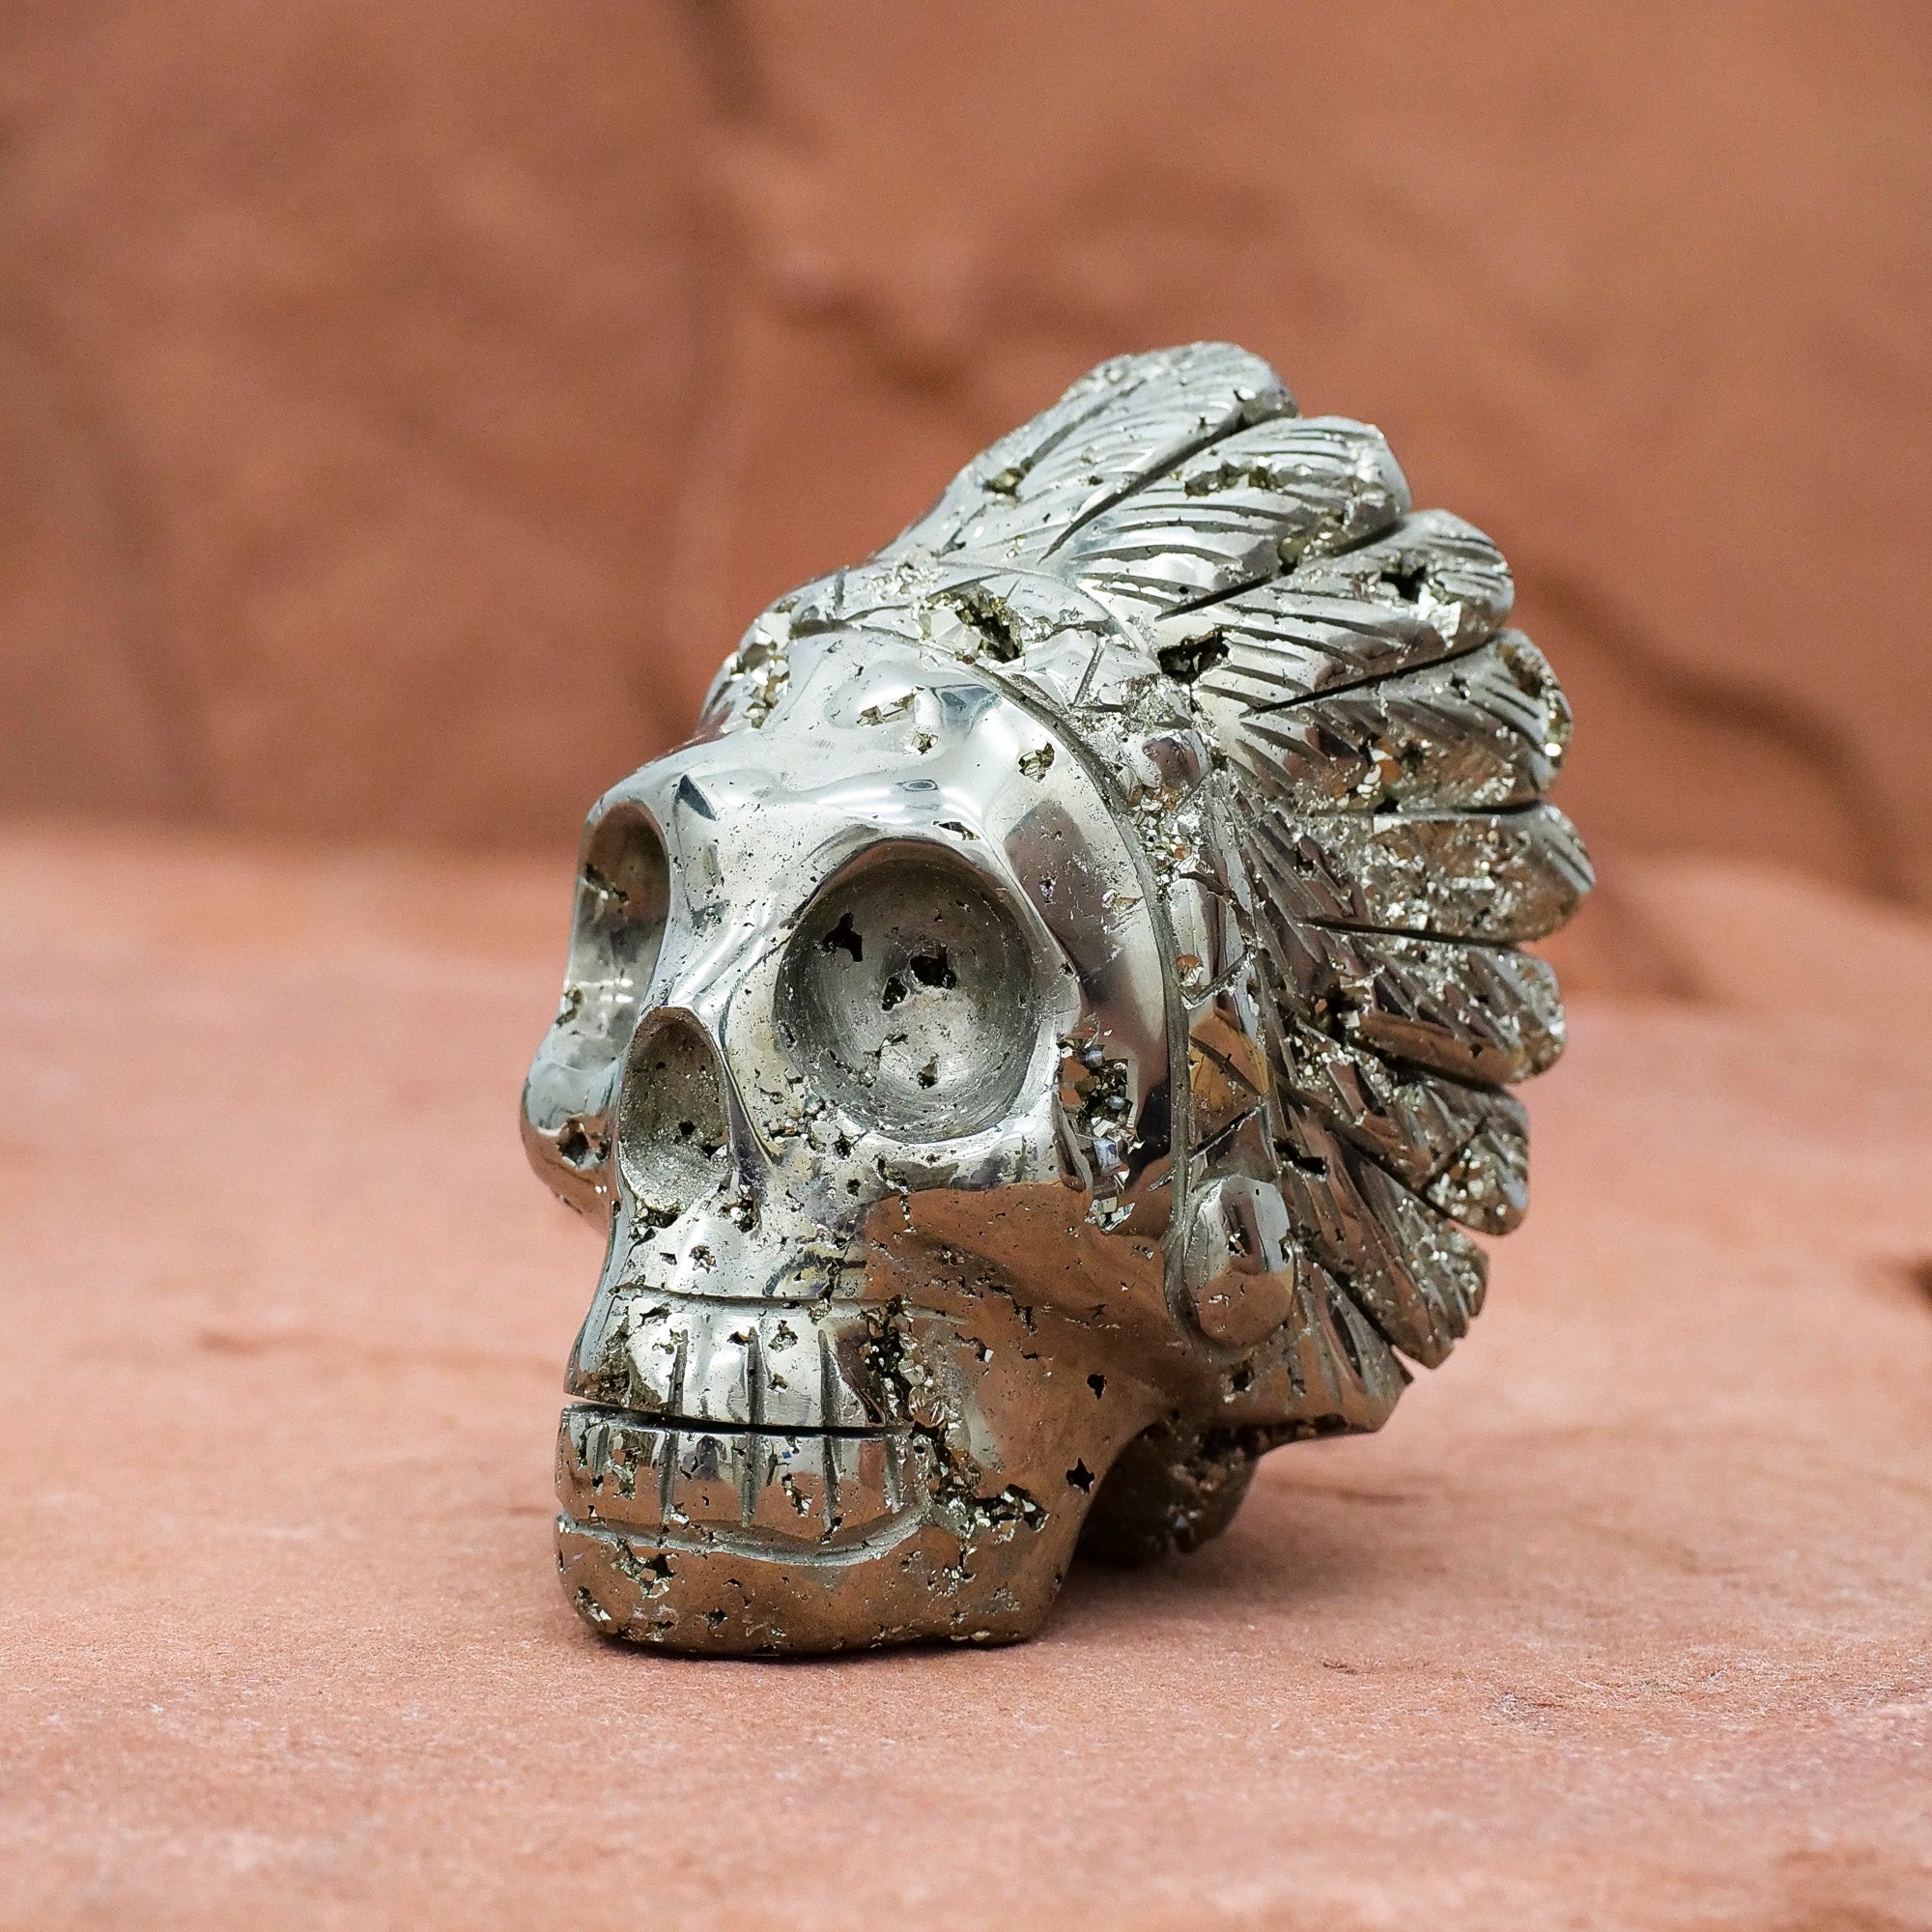 Crystal Skulls – American Skulls